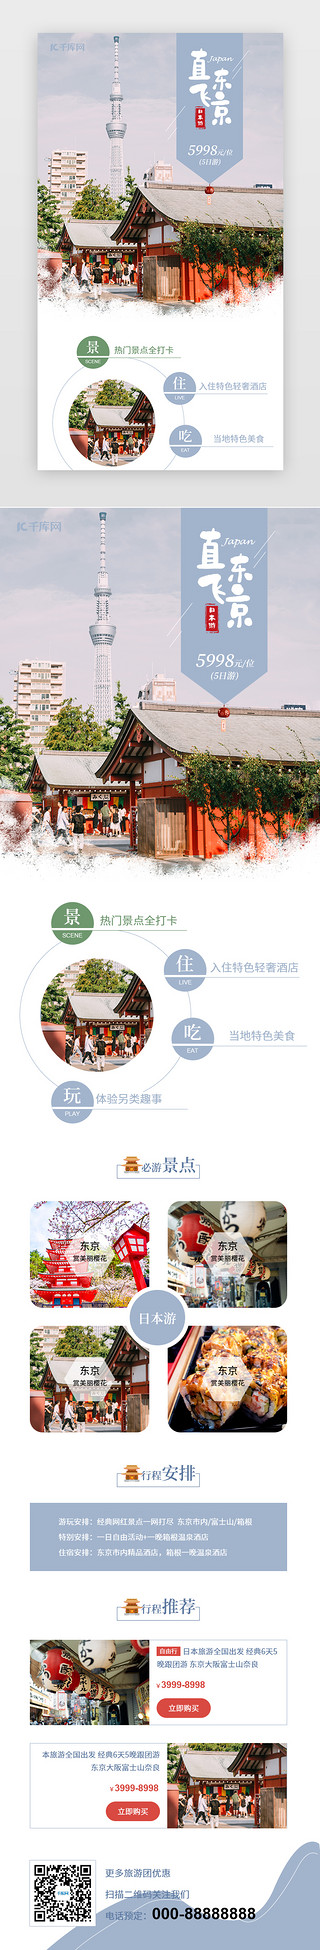 嵌入宣传海报UI设计素材_蓝色小清新日本旅游宣传促销h5长图